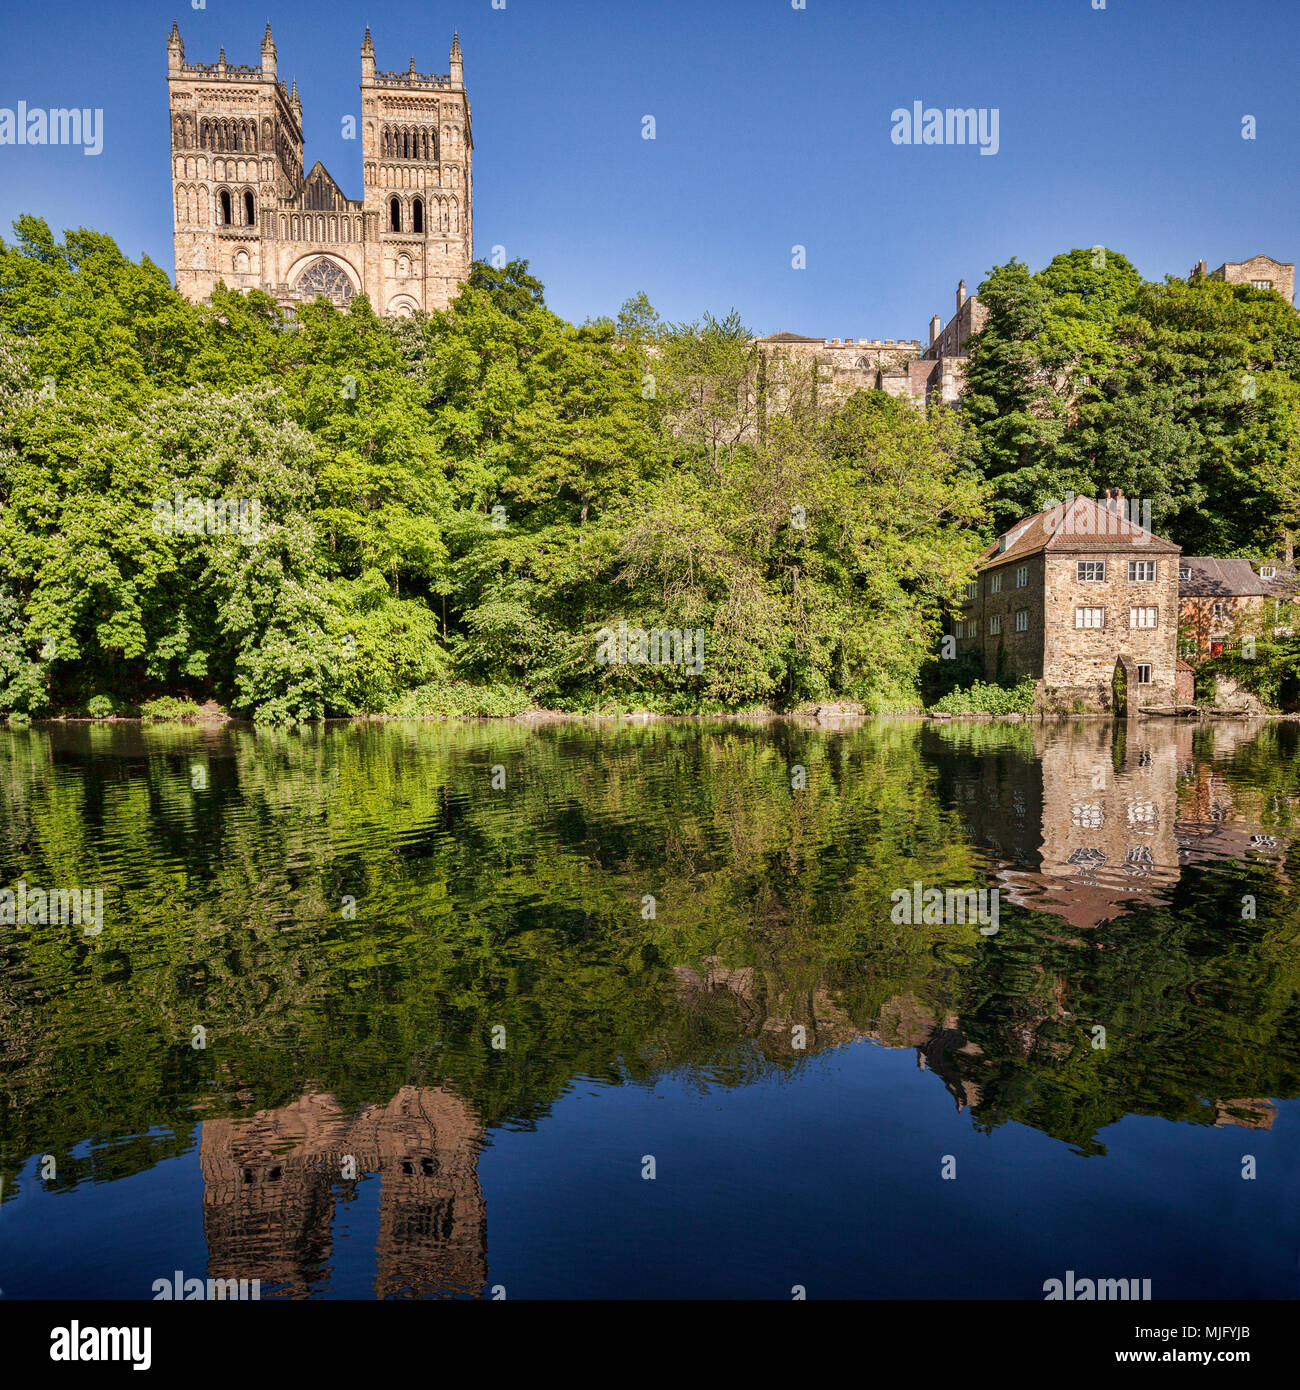 Cathédrale de Durham, et l'ancien moulin à foulon, reflétée dans la rivière Wear, County Durham, England, UK. Banque D'Images